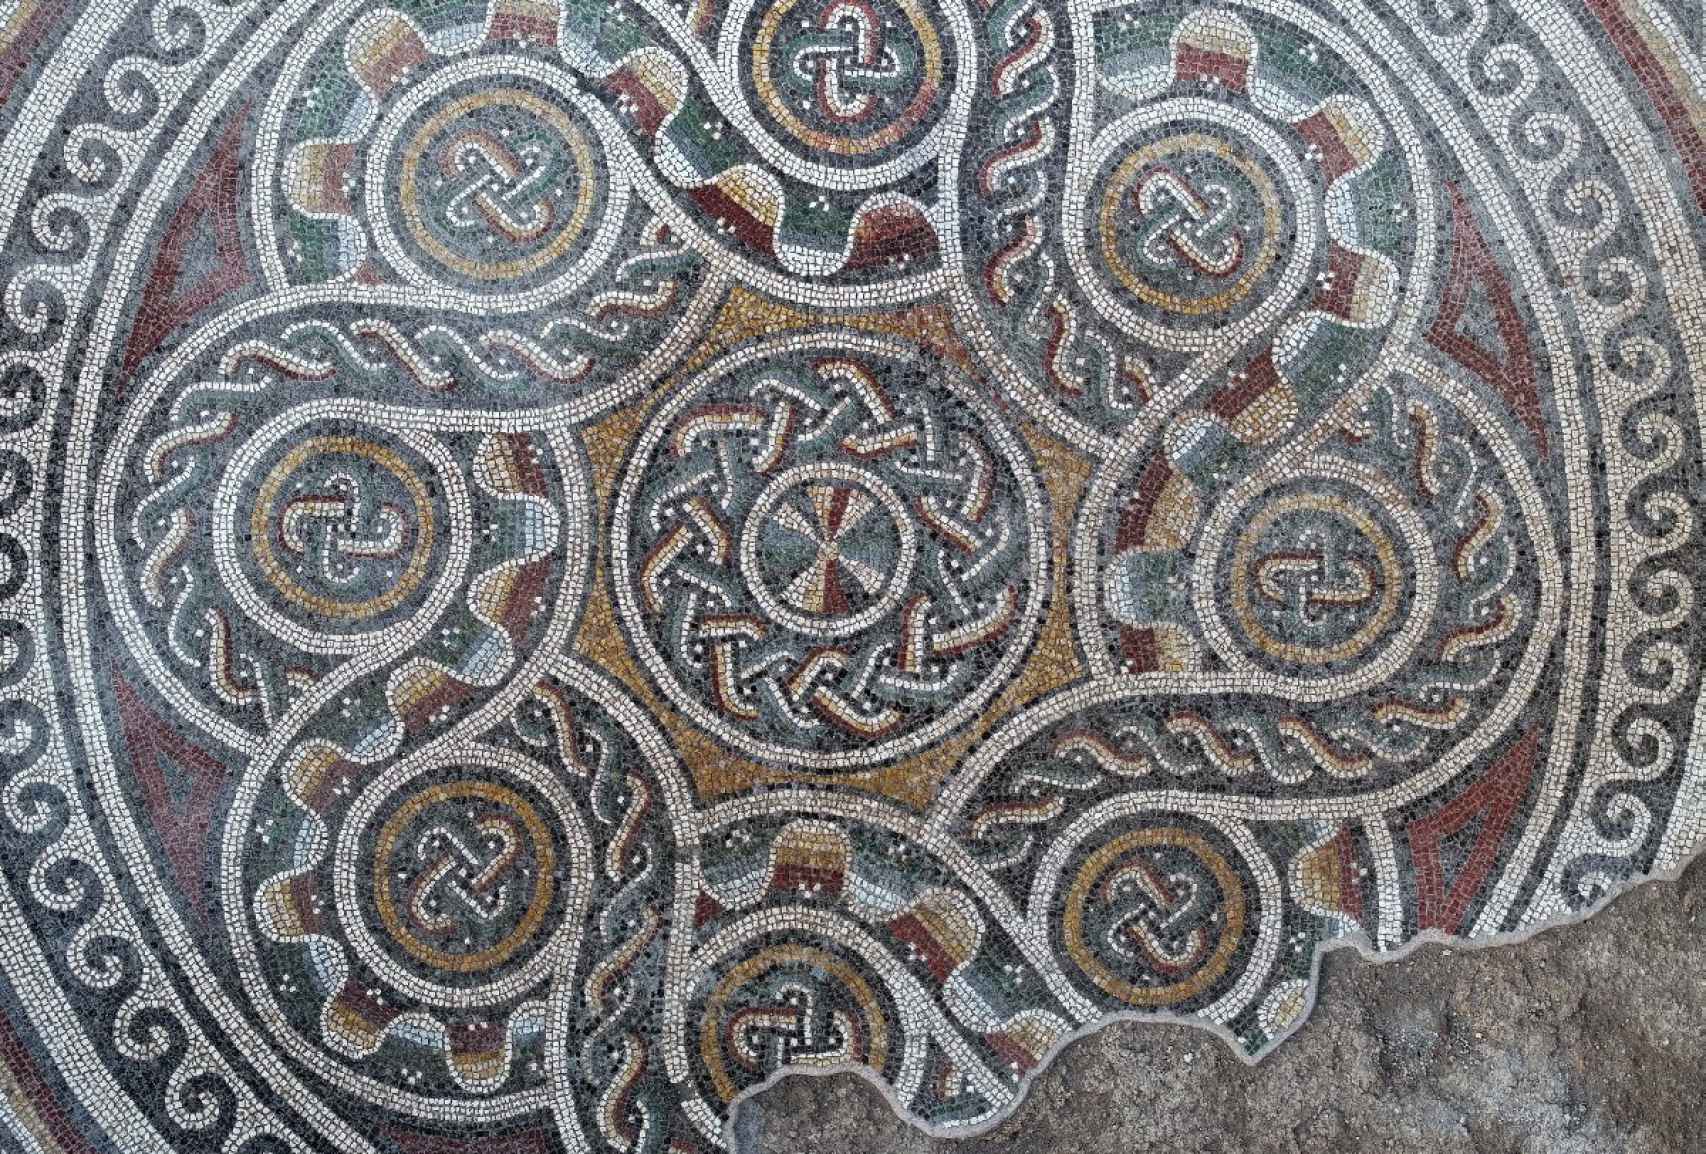 Detalle de uno de los mosaicos hallados en la localidad turca de İncesu.